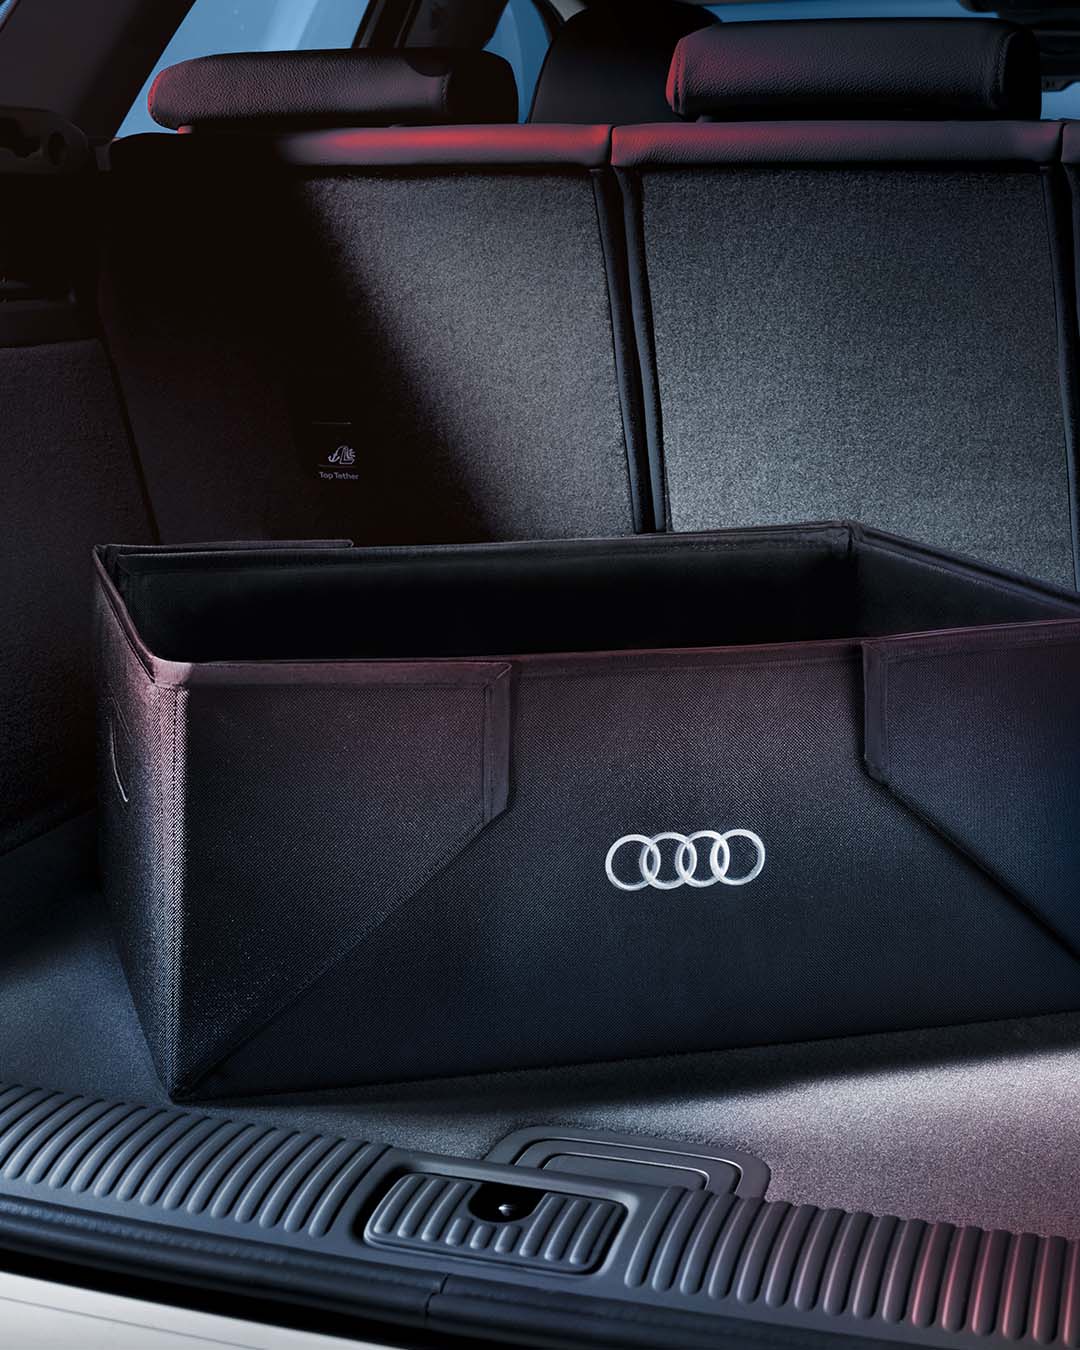 Audi interior boot organiser